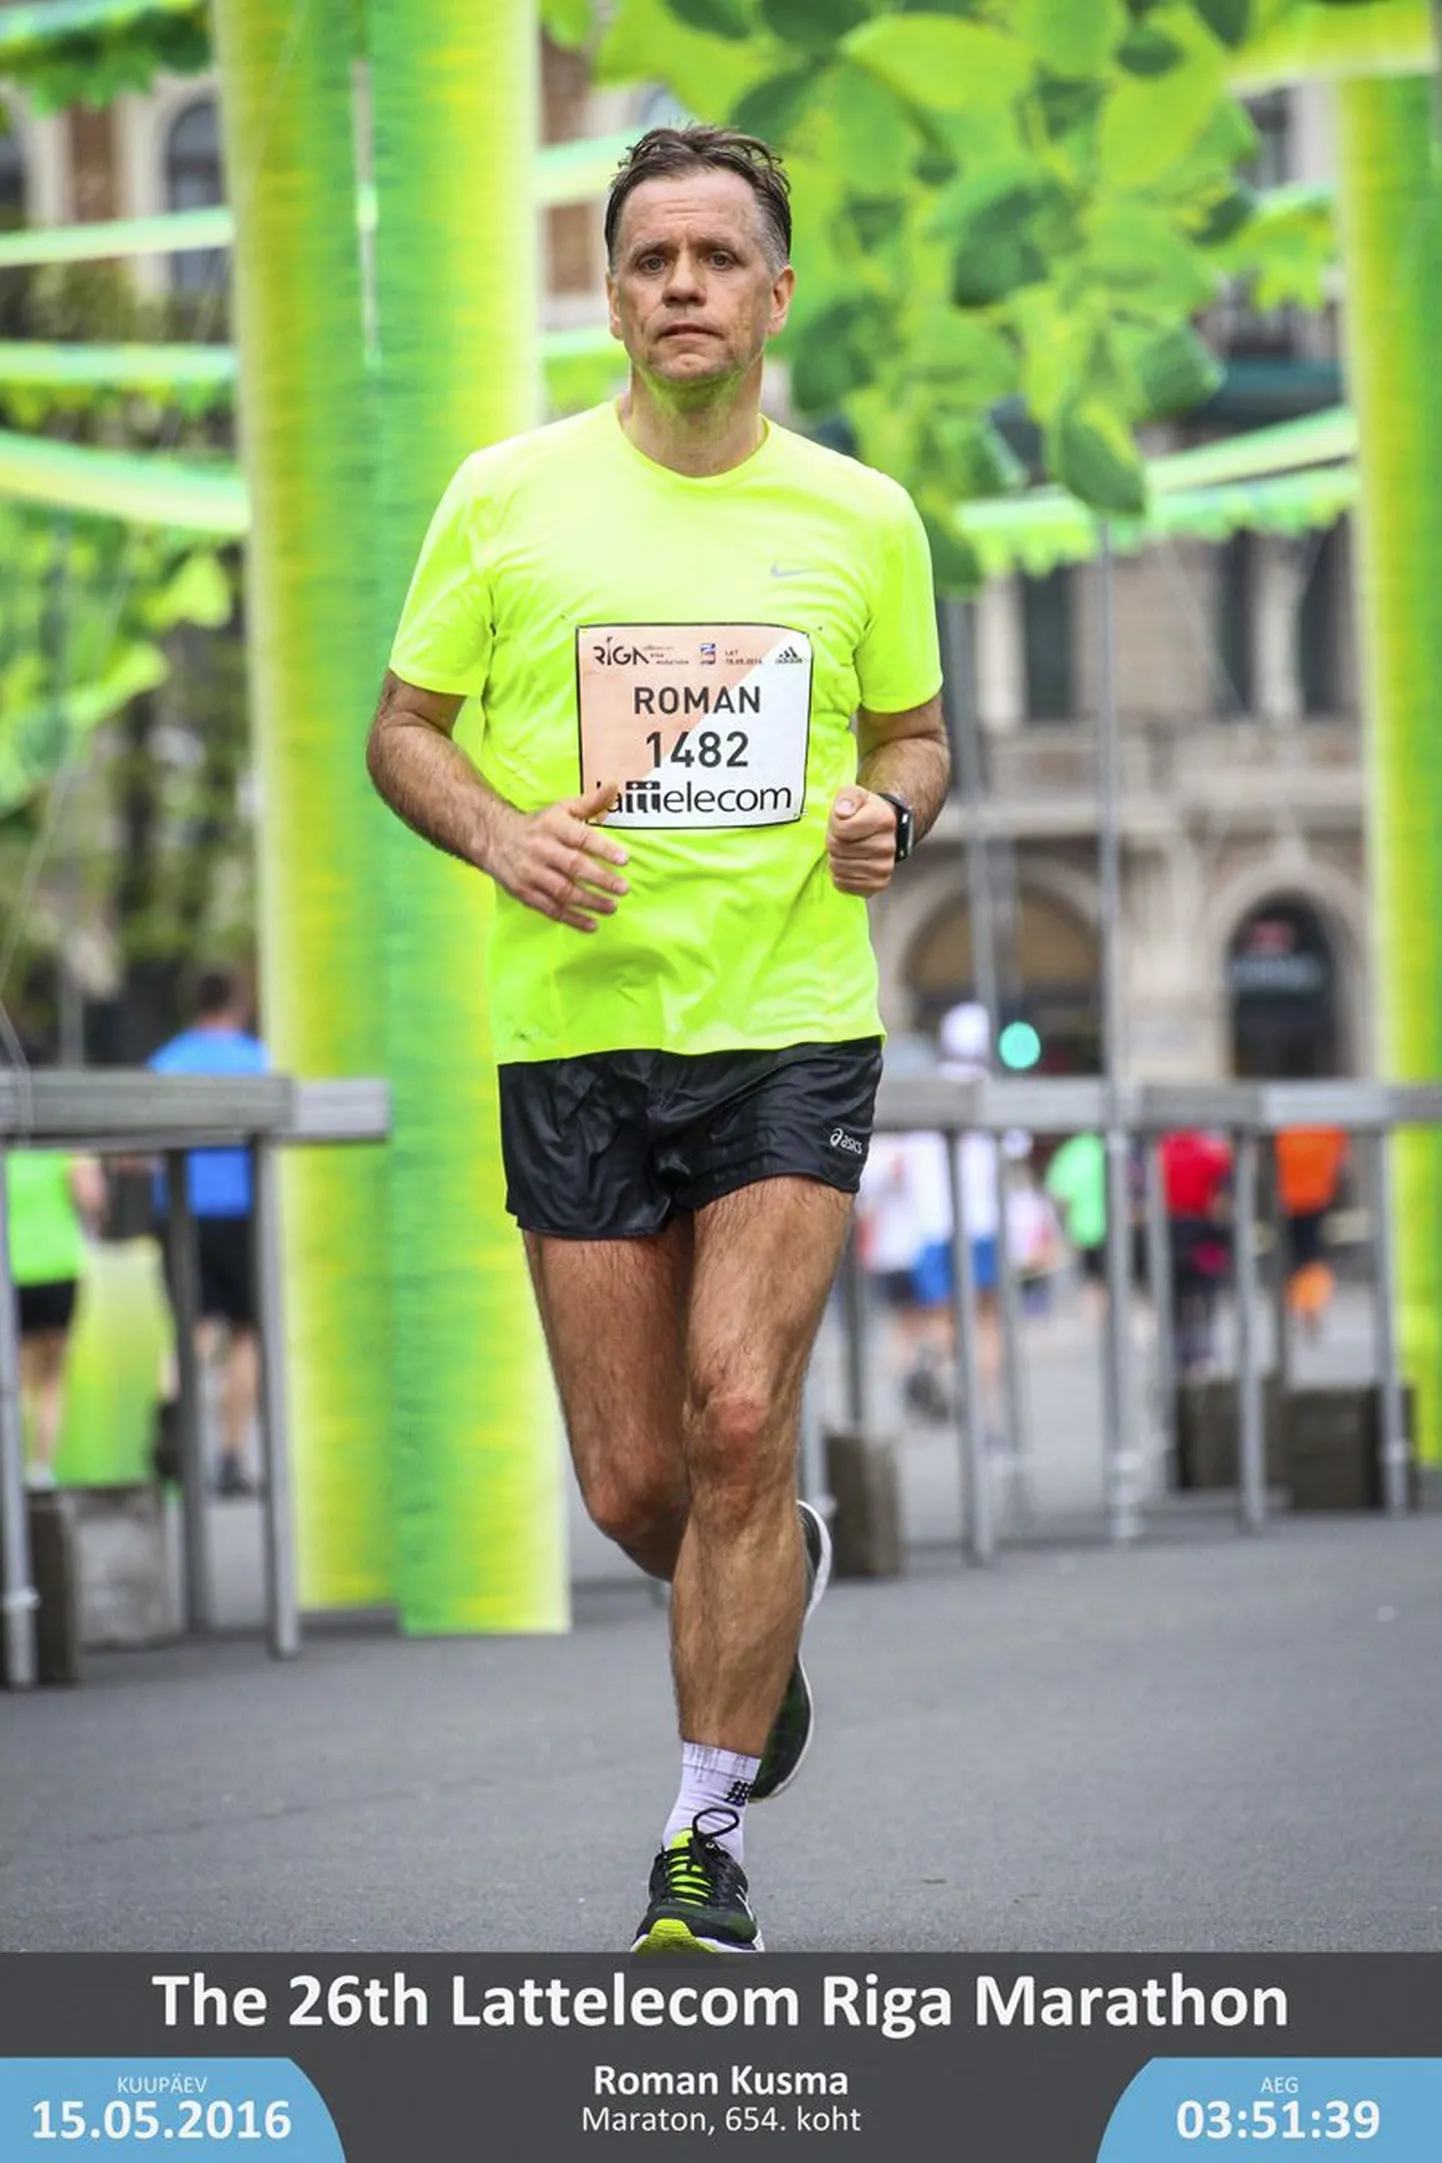 Aqva veekeskuse juht Roman Kusma on otsustanud korraldada võistluse “Triatlon 66”. Sellel aastal jooksis ta Riias oma esimese maratoni.